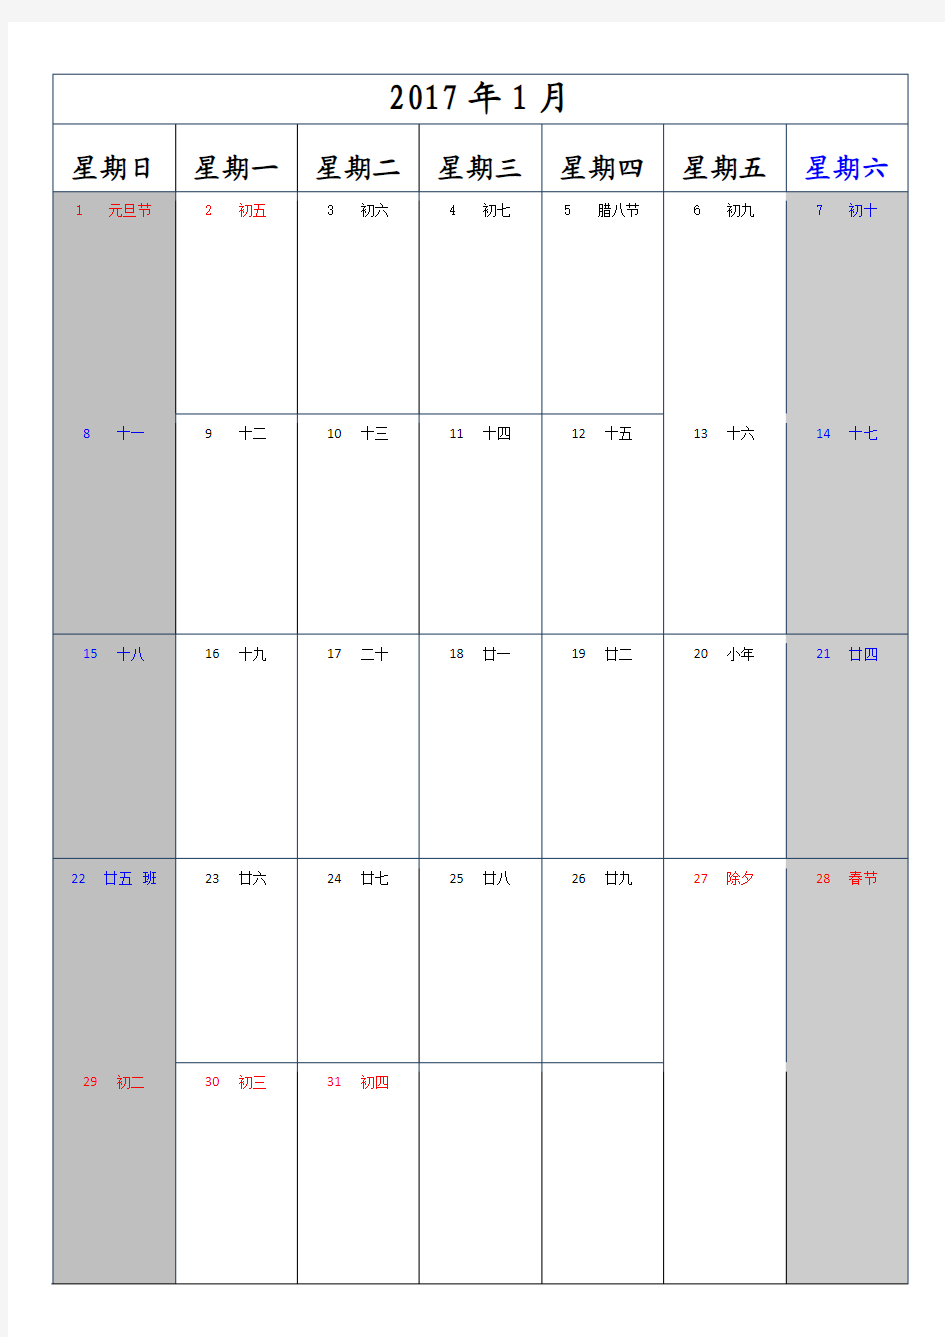 2017年工作日历(一月一张)